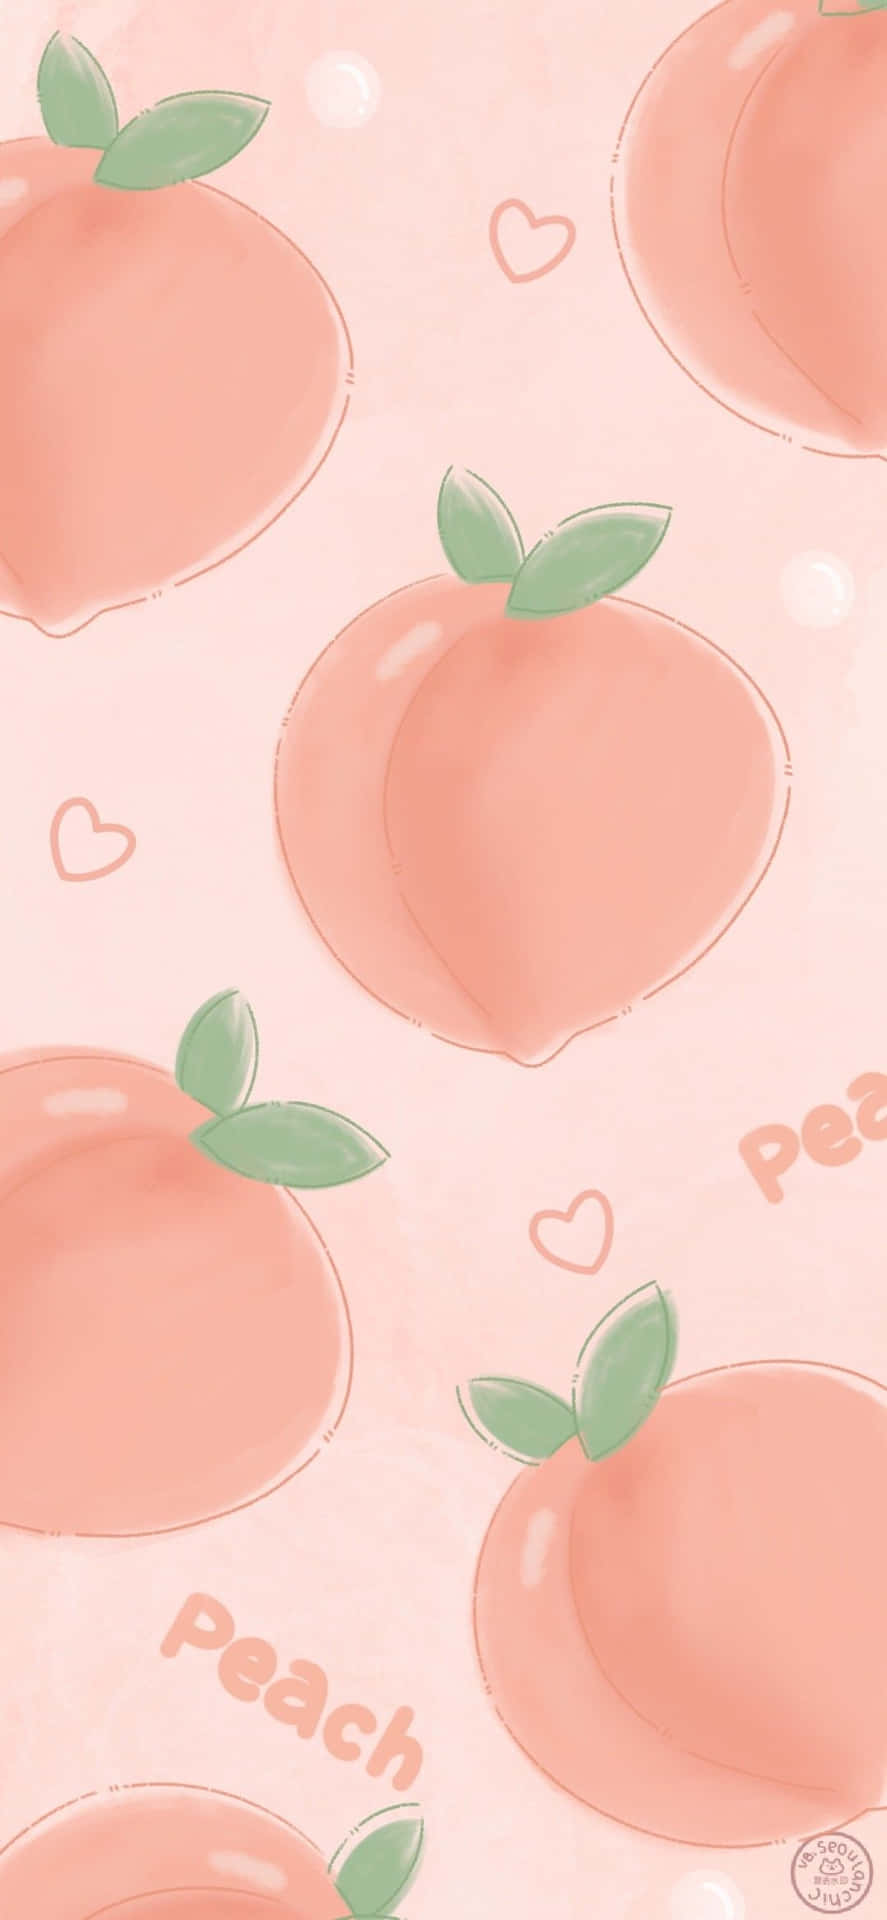 Eineniedliche Pfirsich Sitzt In Einer Schale Mit Rosa Blütenblättern. Wallpaper